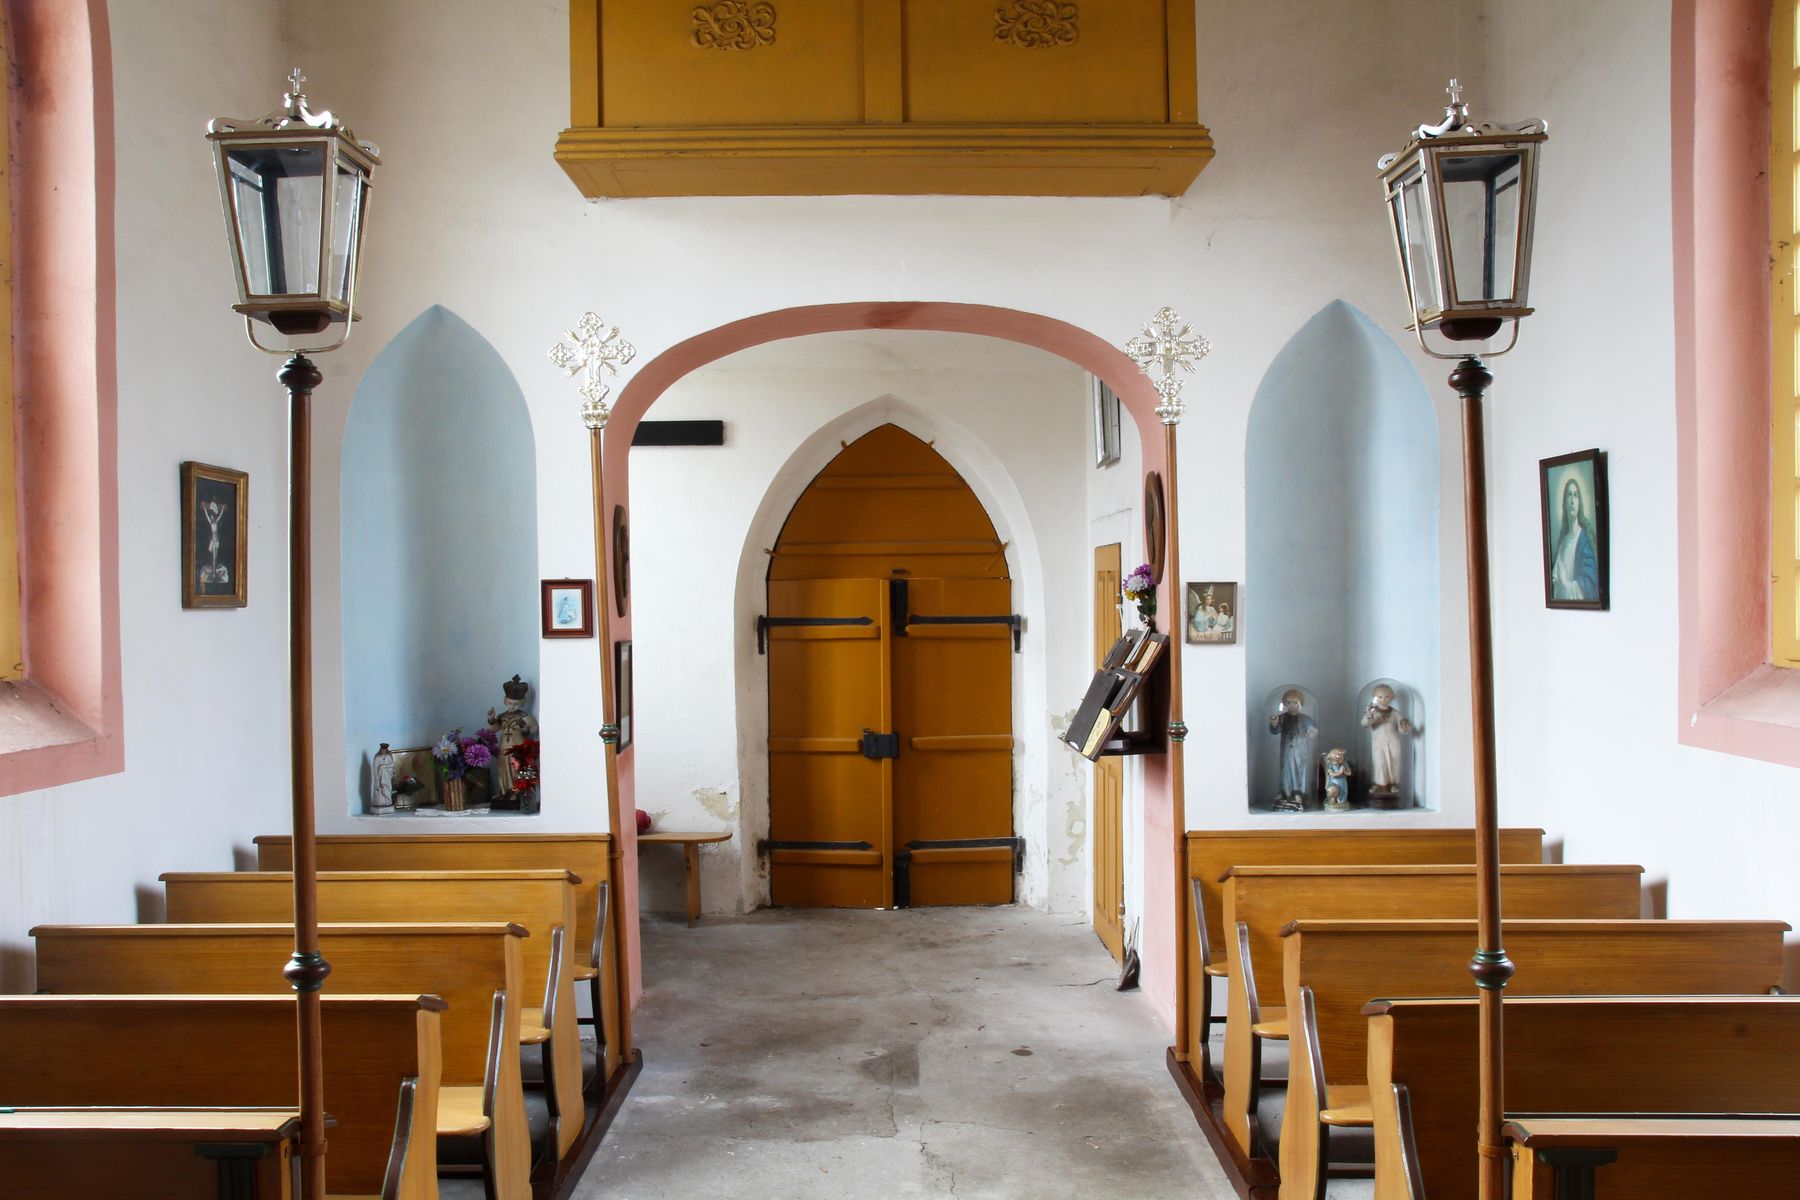 Restaurovali jsme kostelní lavice v kostele sv. Prokopa v Otvovicích - Restaurování kostelní lavice po restaurování 06